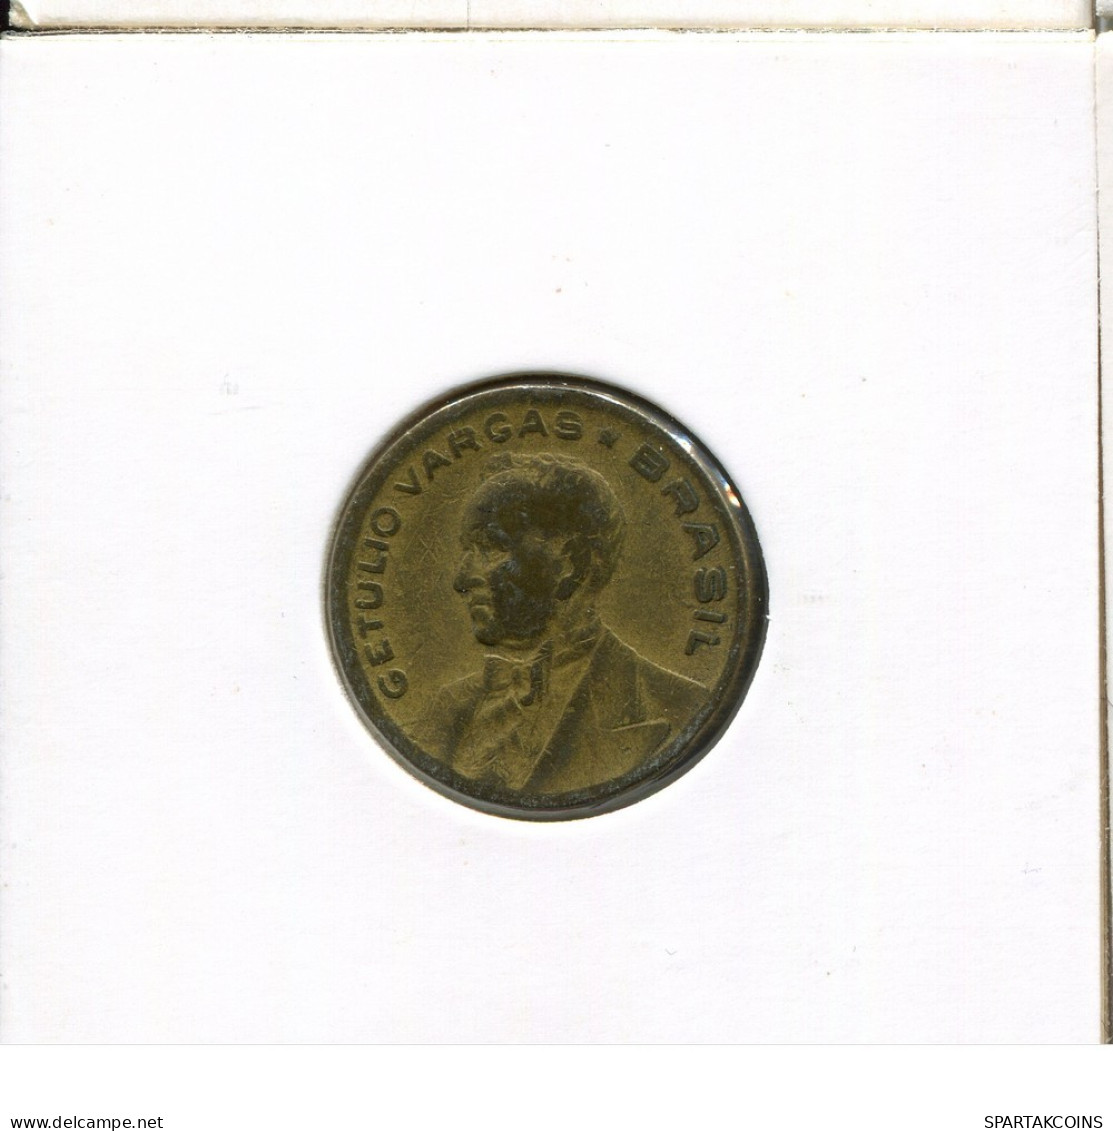 20 CENTAVOS 1945 BRAZIL Coin #AR305.U.A - Brazil